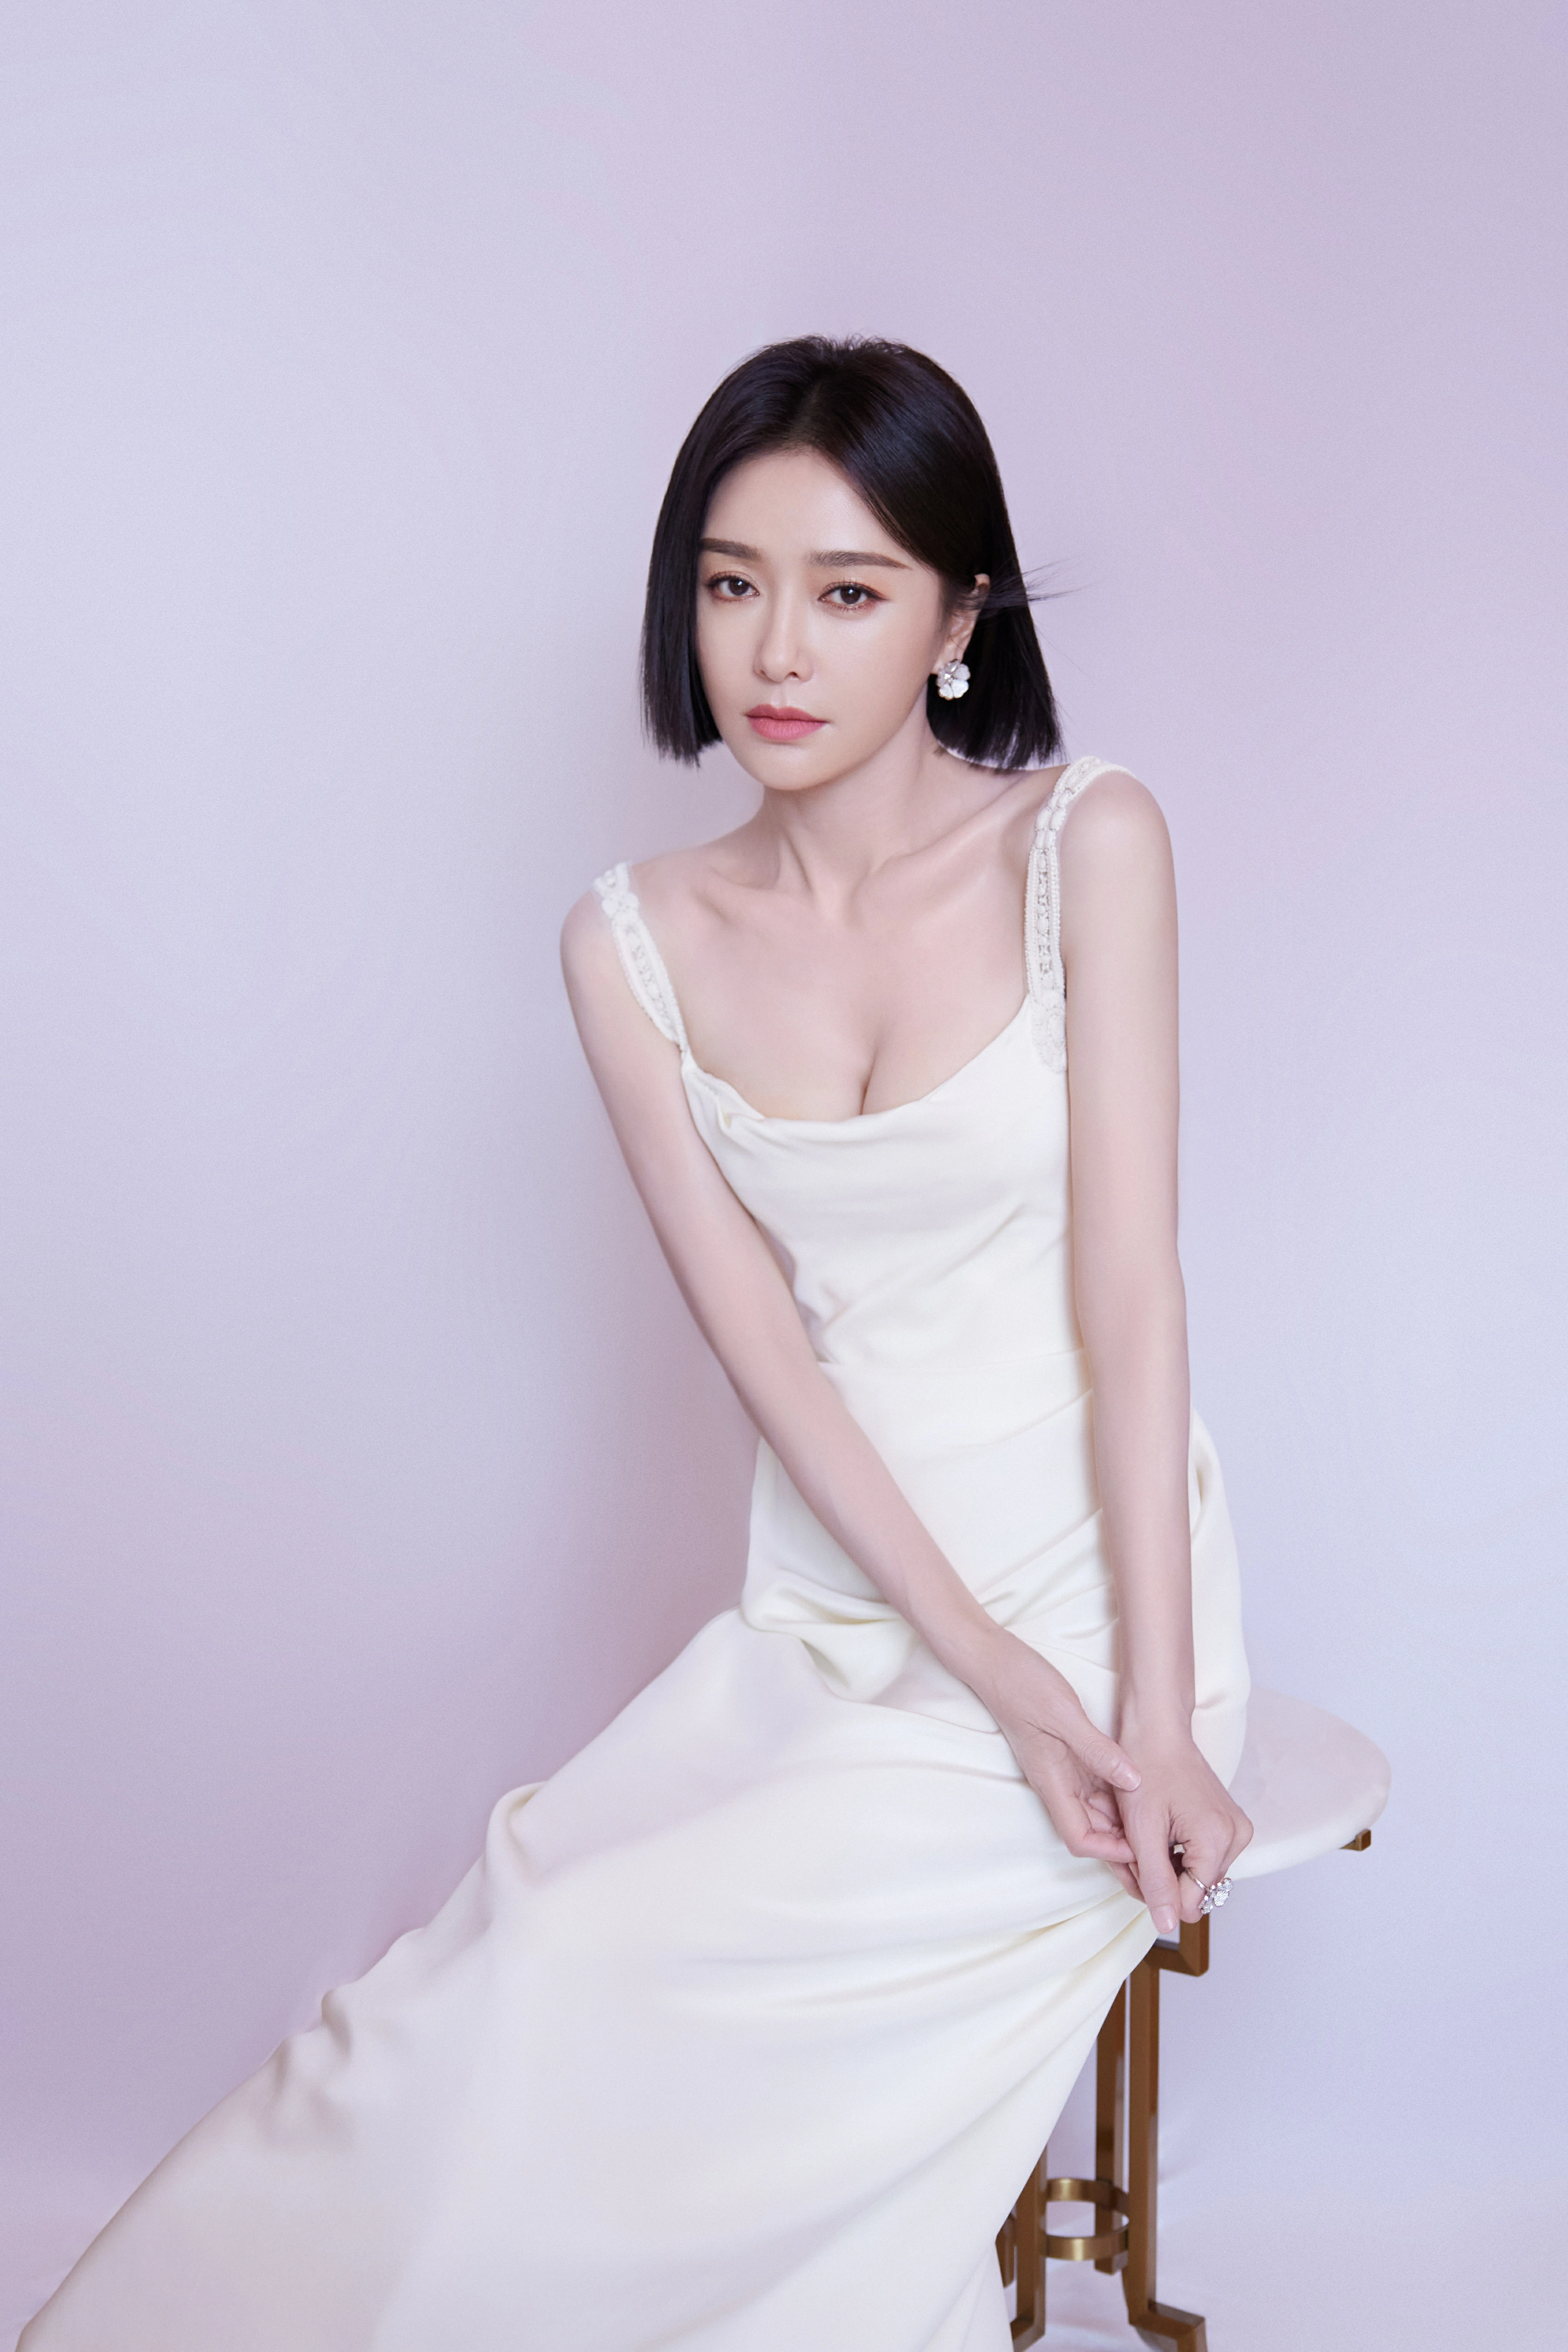 秦岚白色吊带长裙造型好优雅 捧鲜花镜头前甜笑尽显好身材,1 (1)